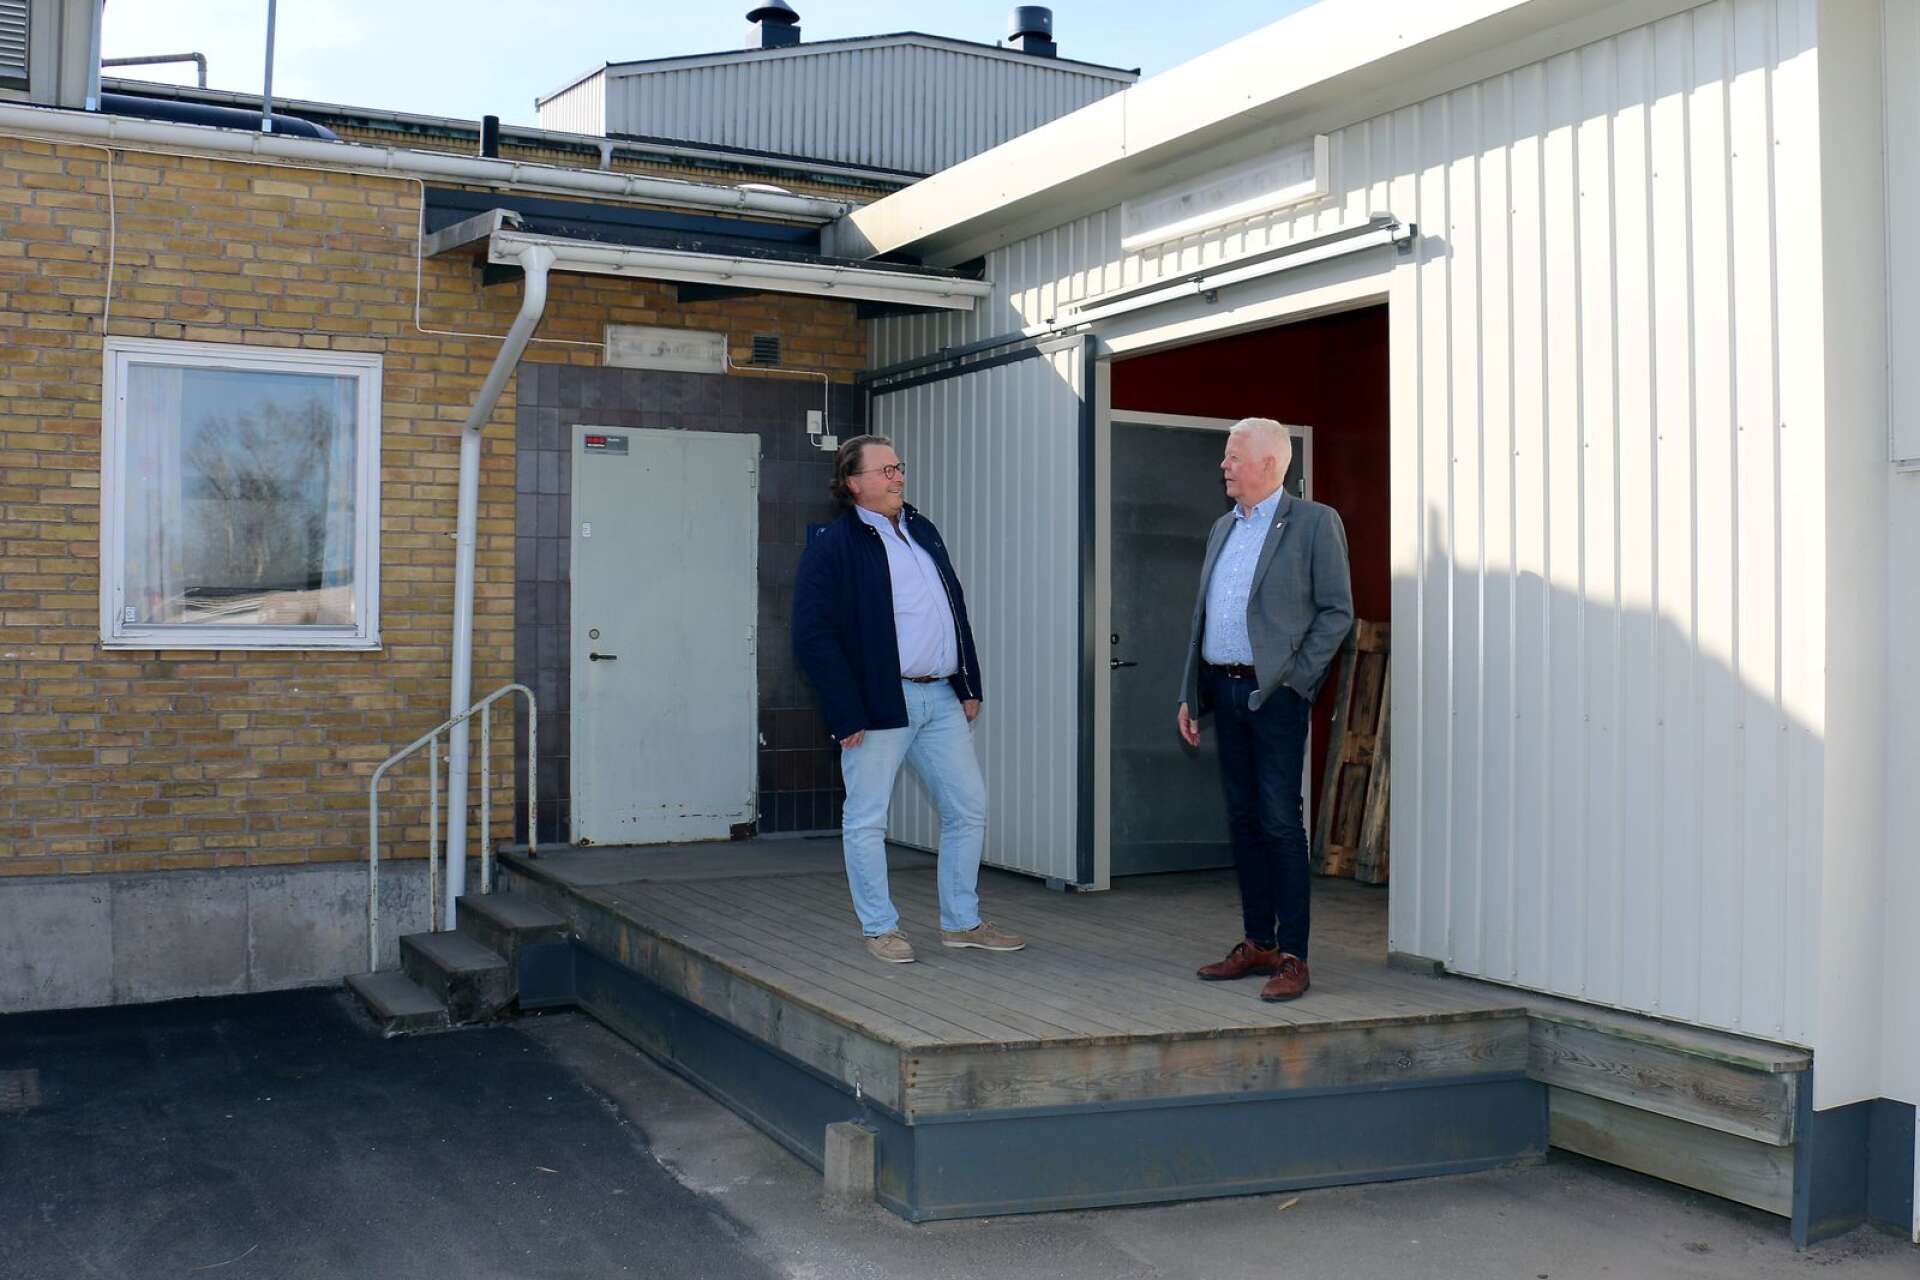 Här vid Nyboskolans lastkaj kan Tibros gymnasieelever från och med tisdag den 5 maj hämta gratis lunchlåda. Per-Olof Andersson (M) och Rolf Eriksson (S) uppger att det även går att hämta mat i Ransbergs skola.